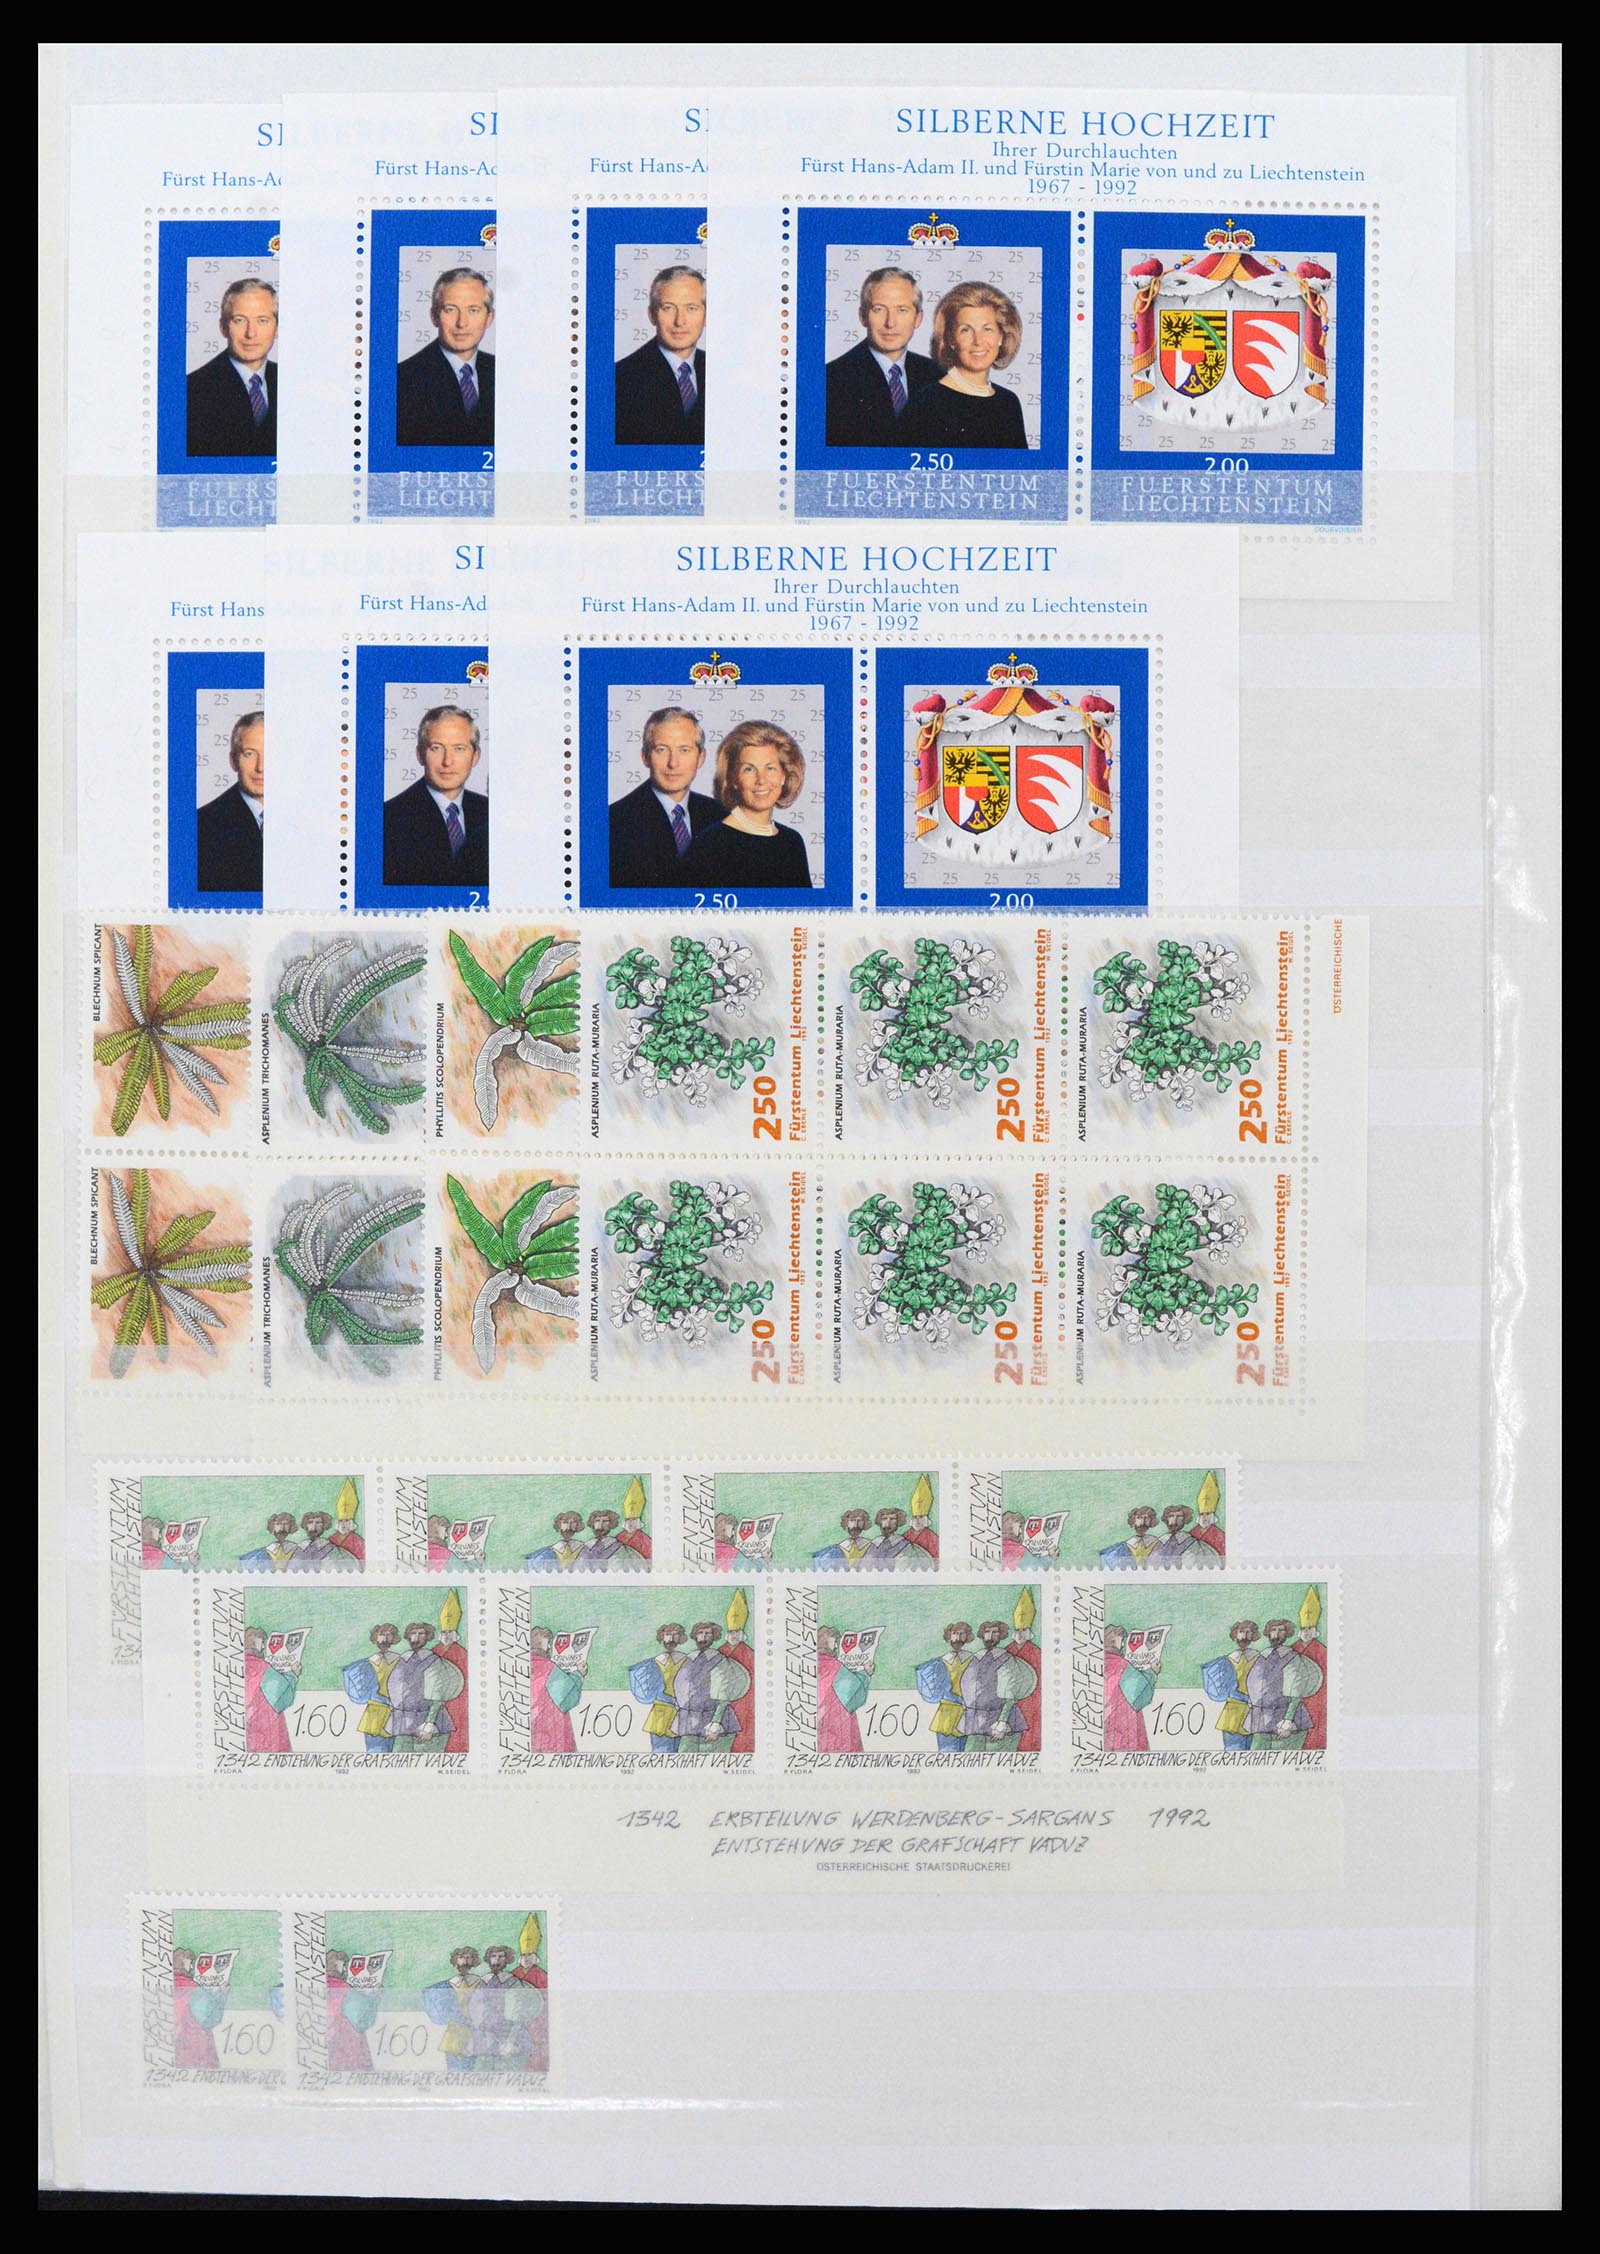 37261 108 - Stamp collection 37261 Liechtenstein 1961-1995.